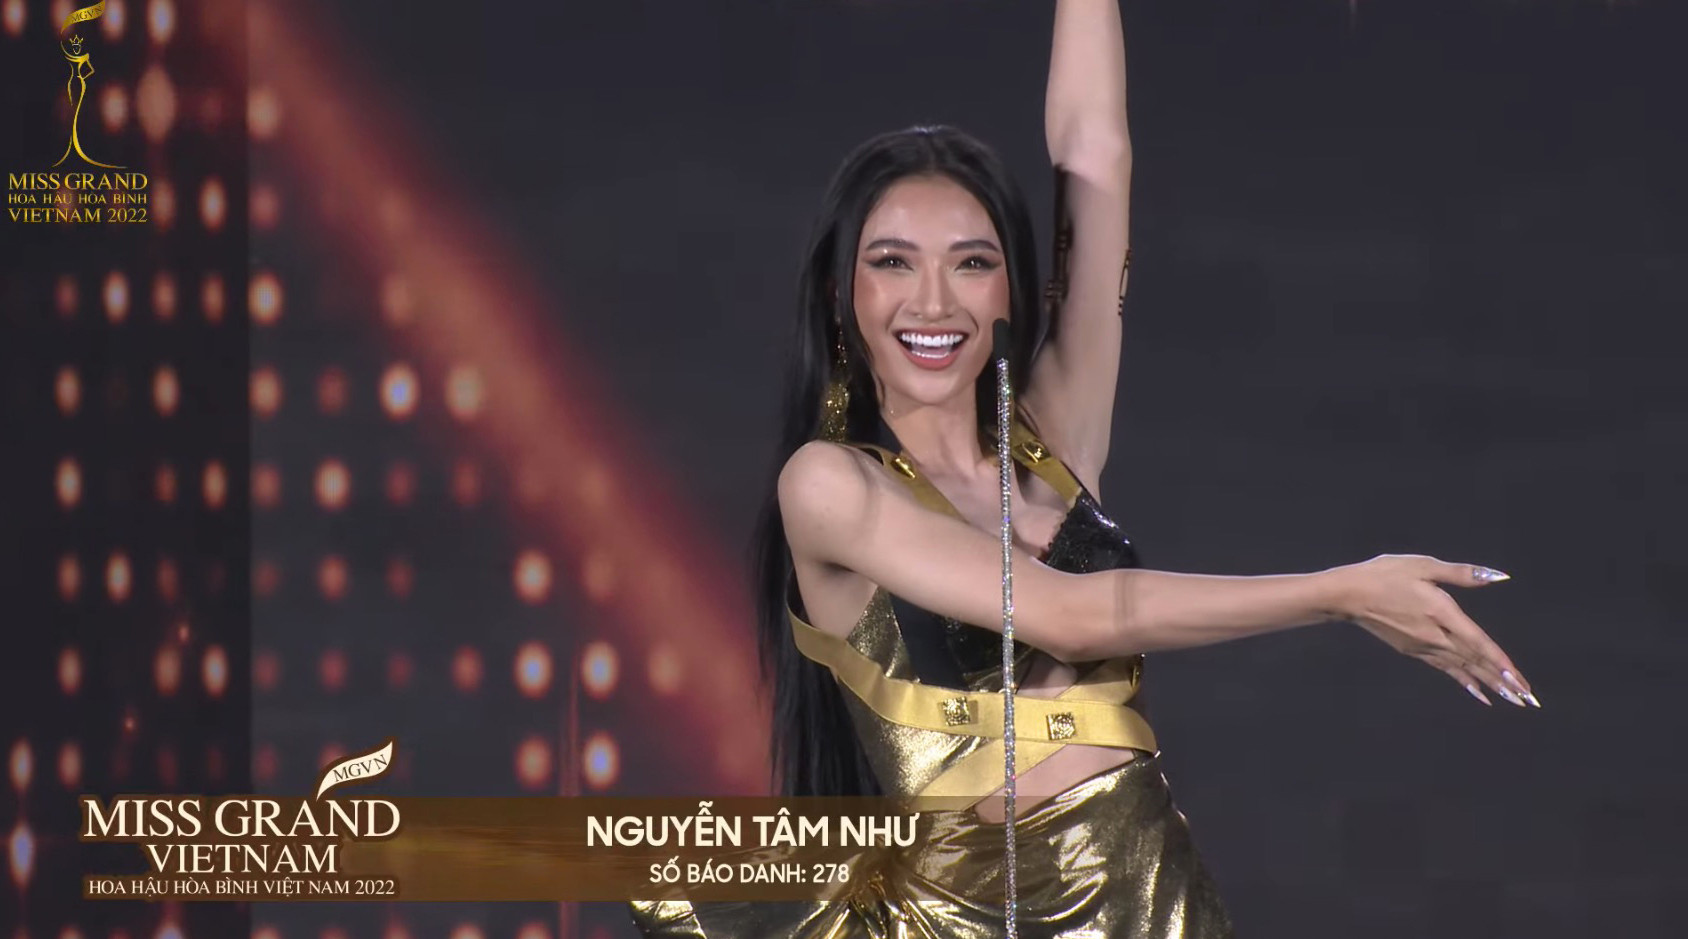 Đoàn Thiên Ân đăng quang Miss Grand Vietnam - Hoa hậu Hòa bình Việt Nam 2022 - 24